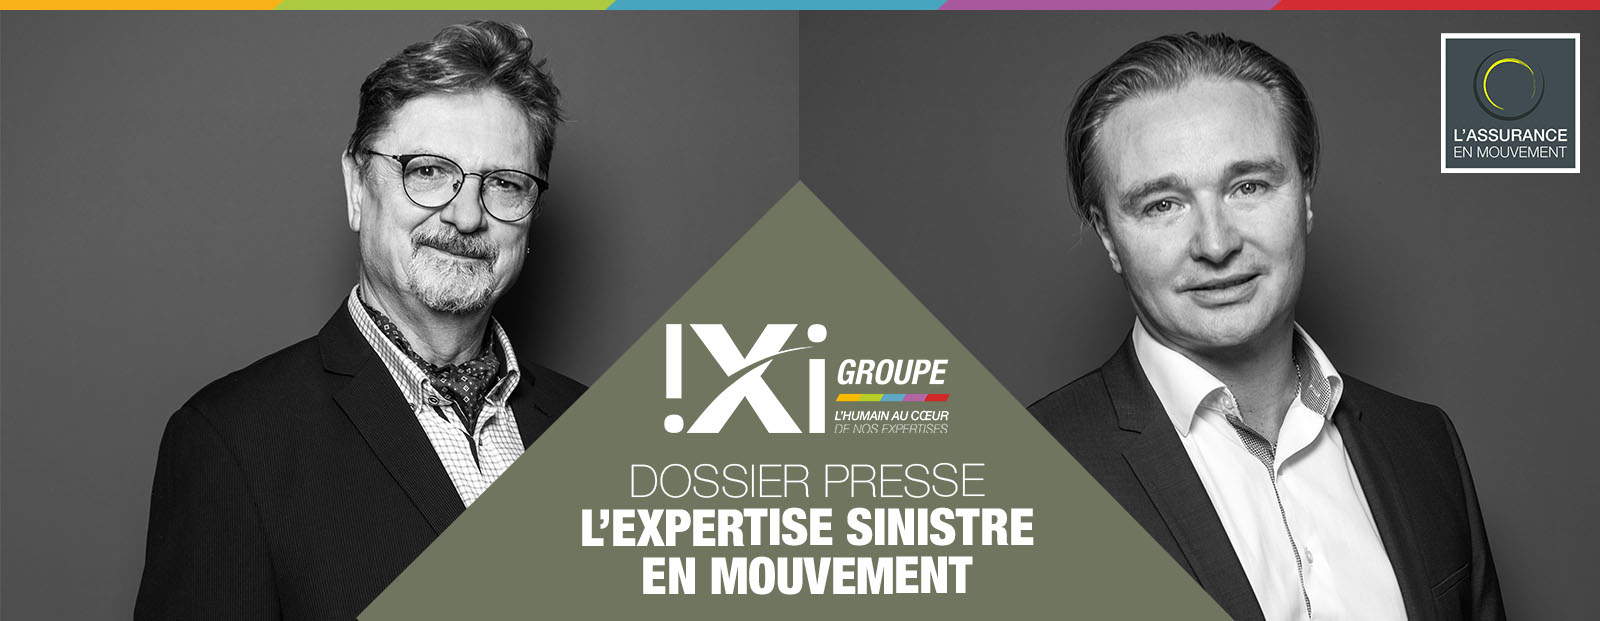 IXI-Groupe   “L'expertise sinistre en mouvement” dans le magazine Dessine-moi l'assurance